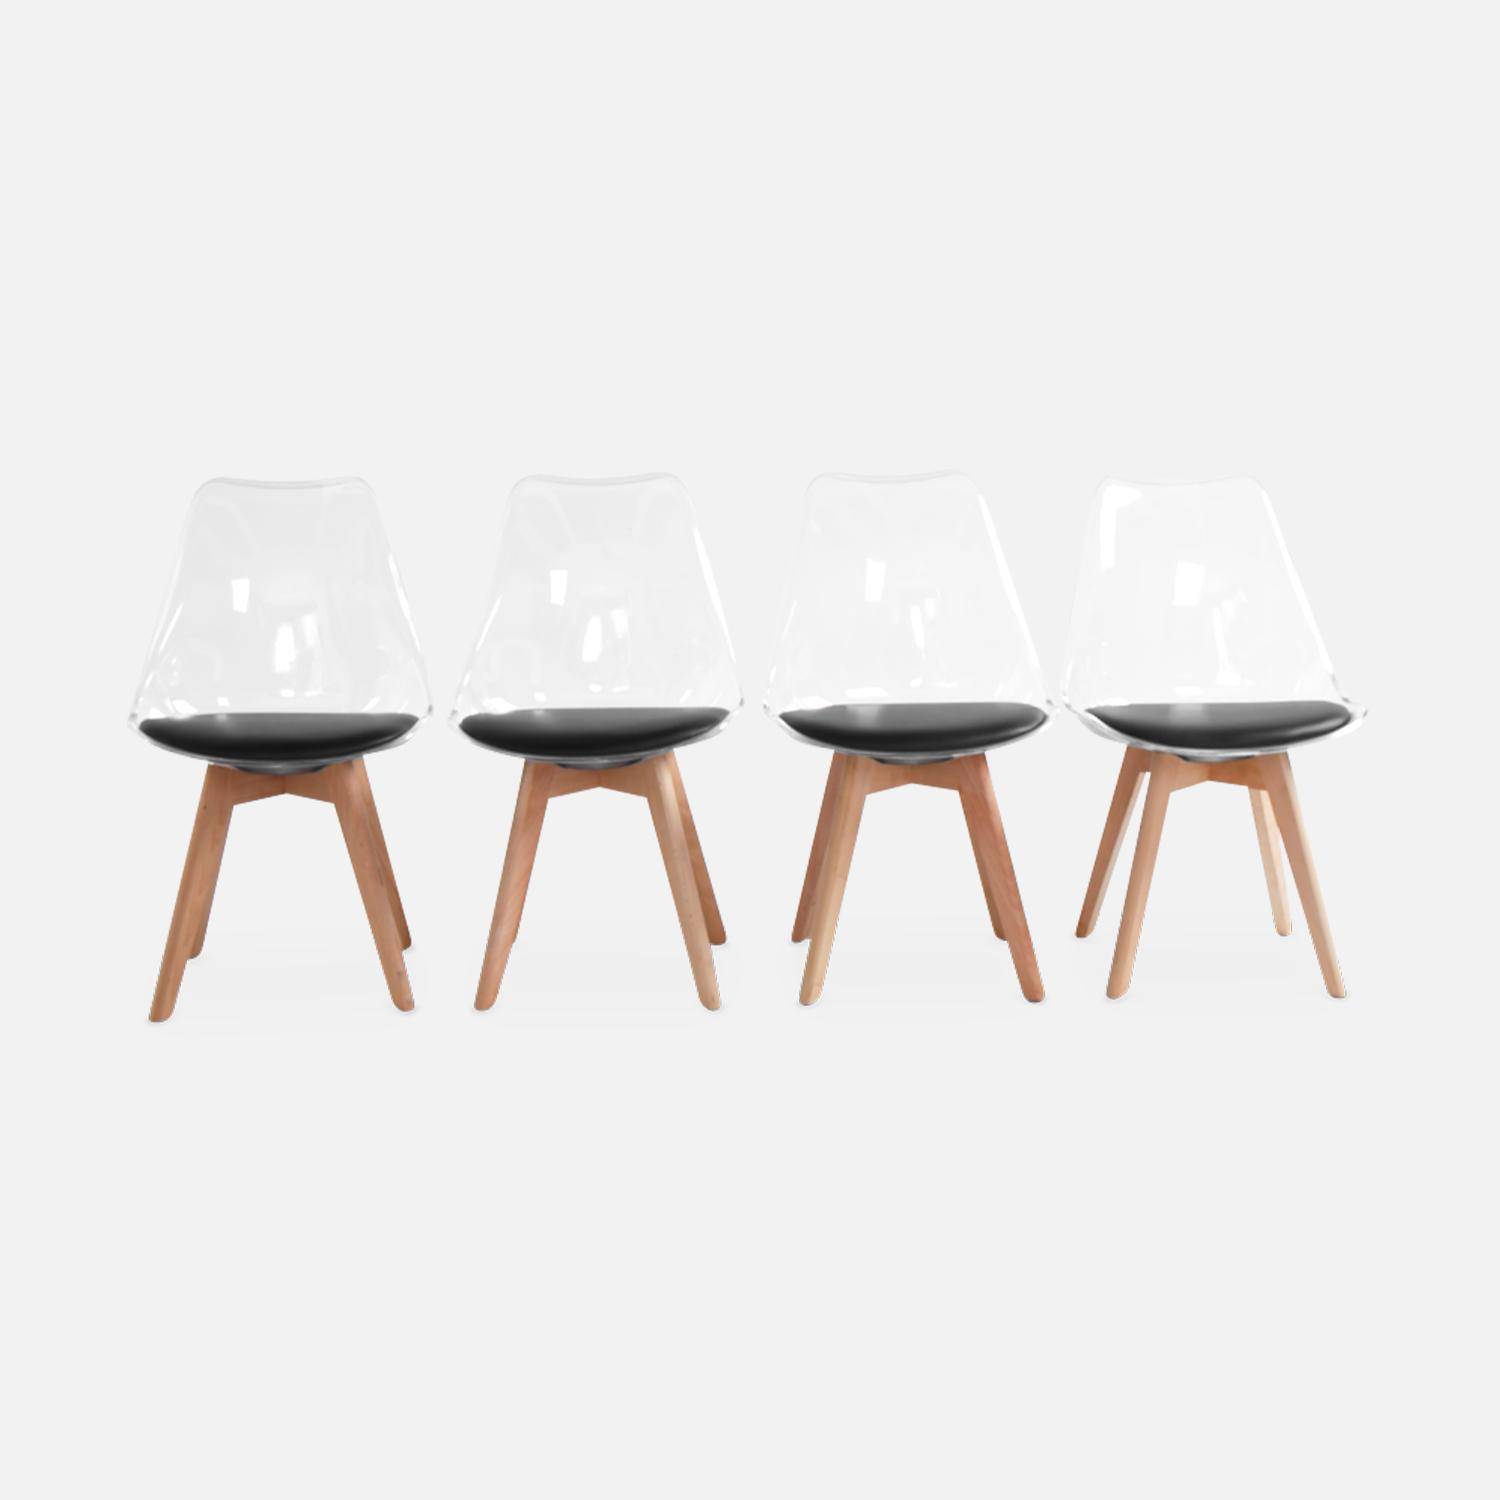 4er Set Stühle im skandinavischen Stil - Lagertha - Holzbeine, Ein Sitz, schwarzes Kissen, transparente Sitzschale,sweeek,Photo4